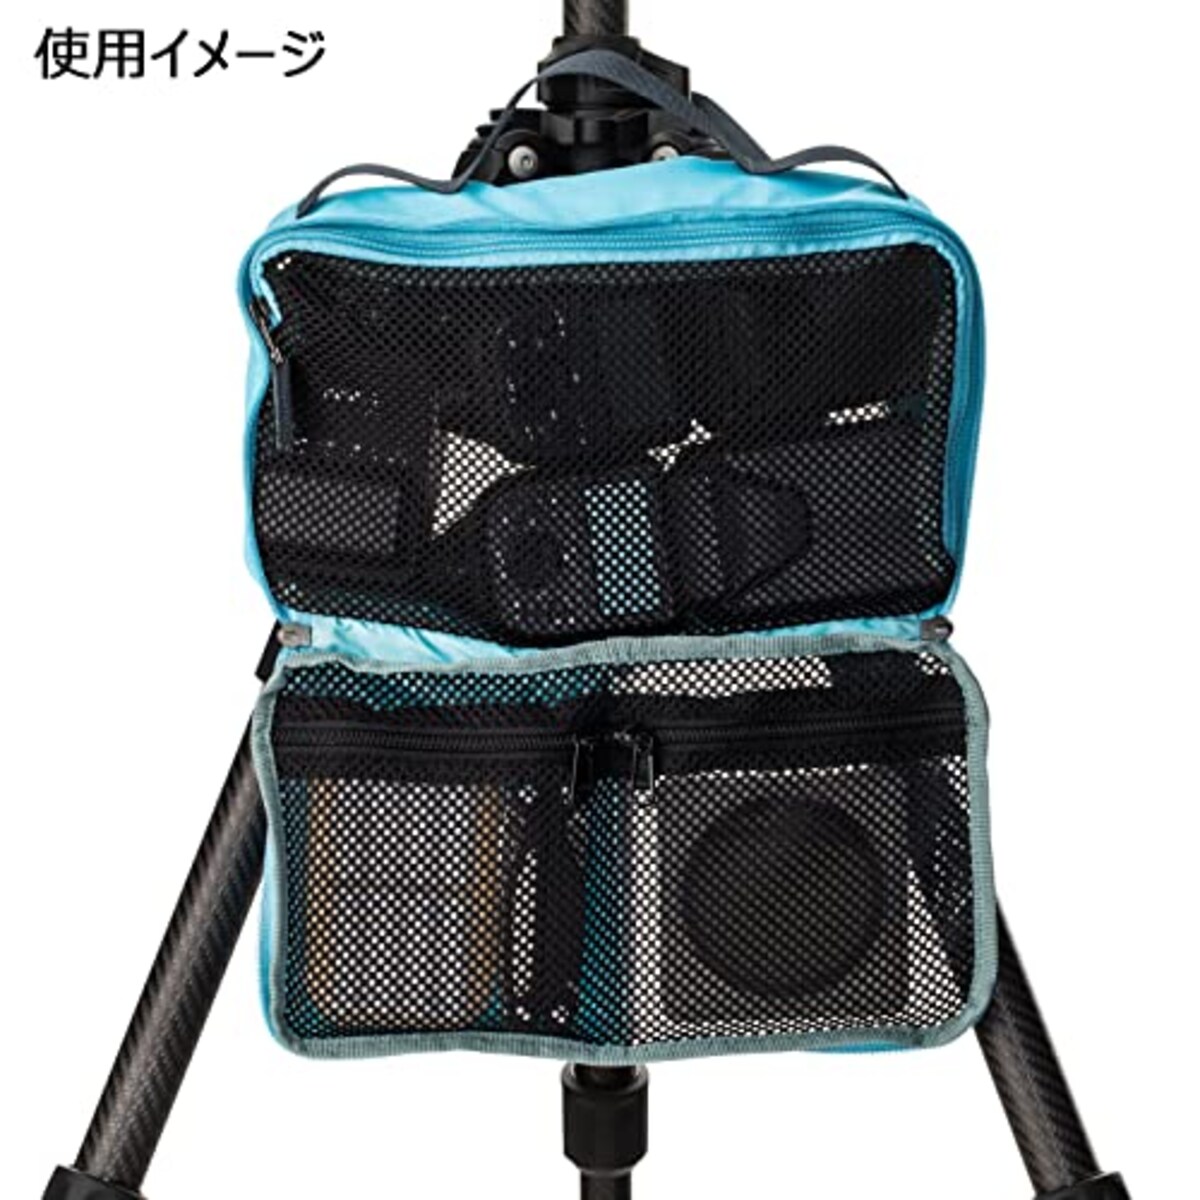  [Shimoda] カメラケース Shimoda Accessory Case リバーブルー画像4 